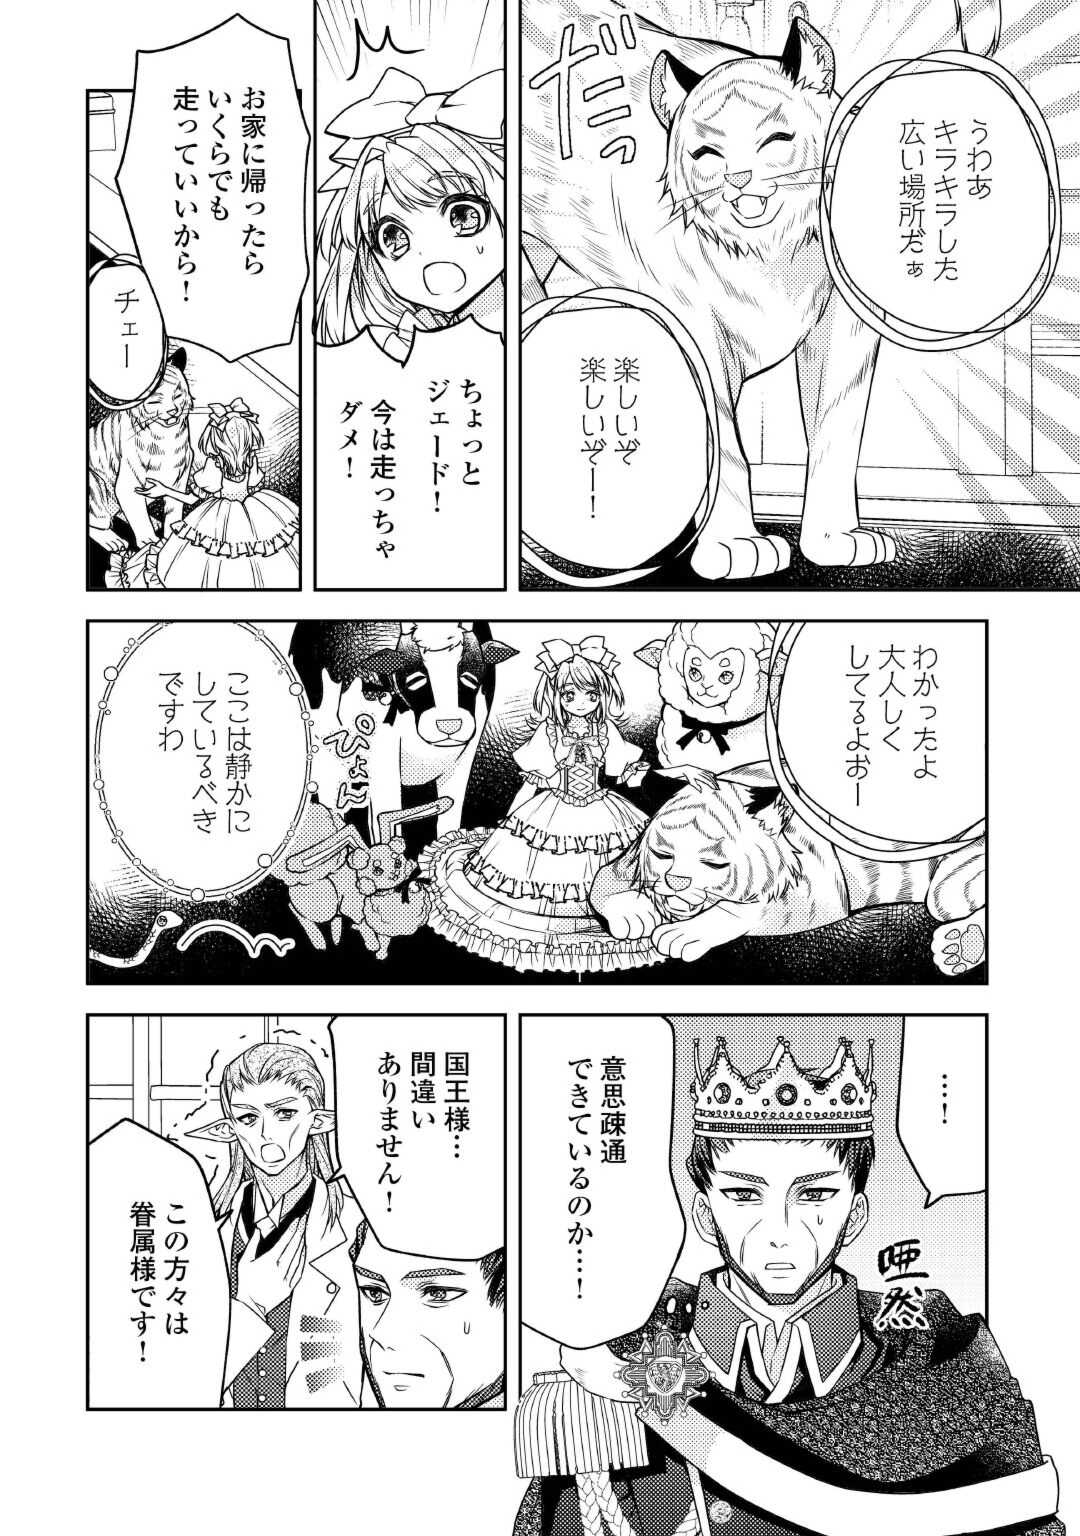 Toaru Chisana Mura No Chi Tona Tanya Ya San - Chapter 19 - Page 8